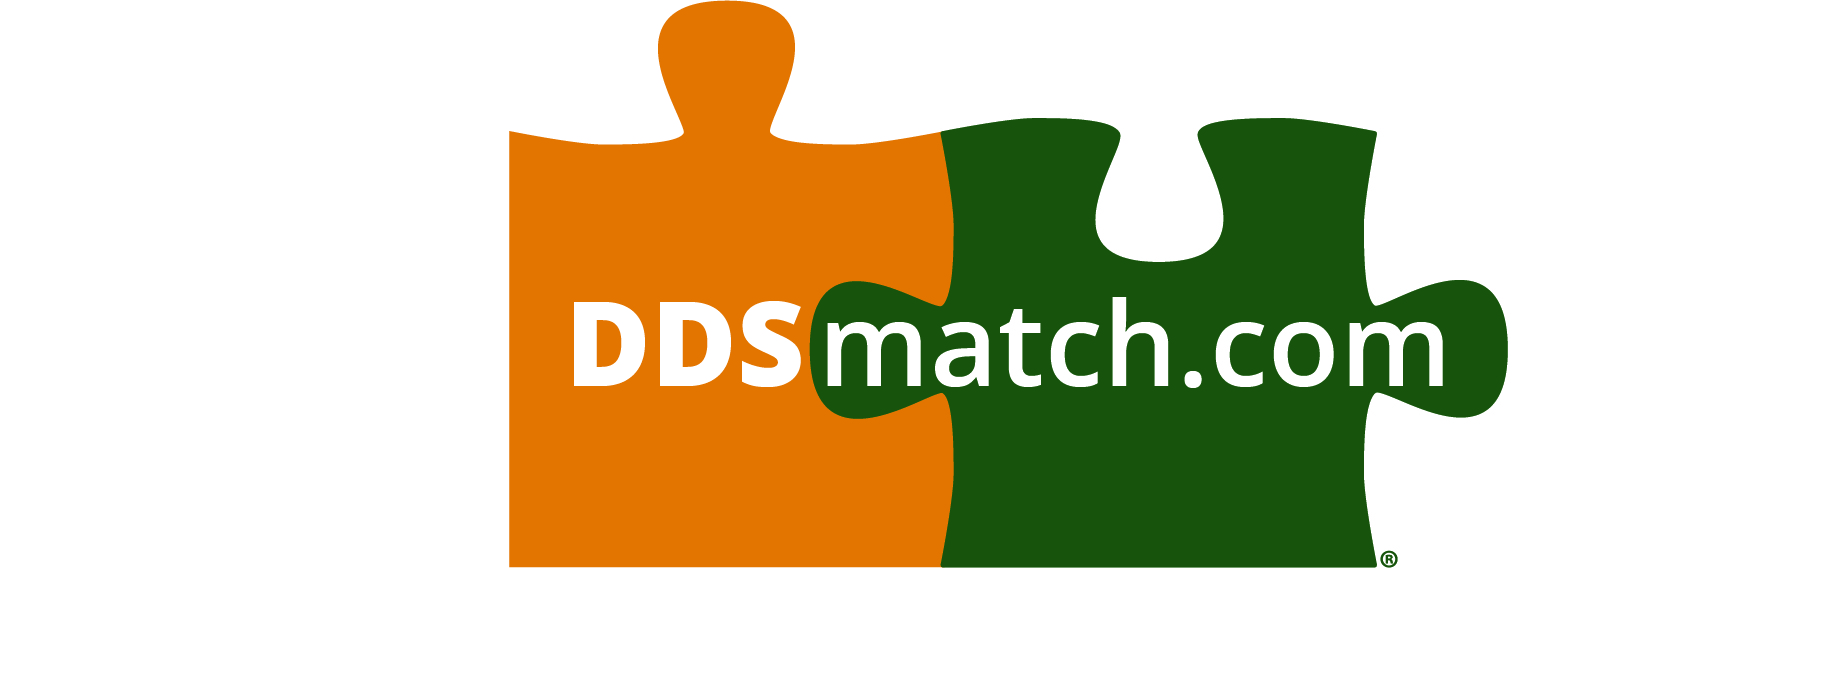 ddsmatch.com - Kevin McGonigal Logo